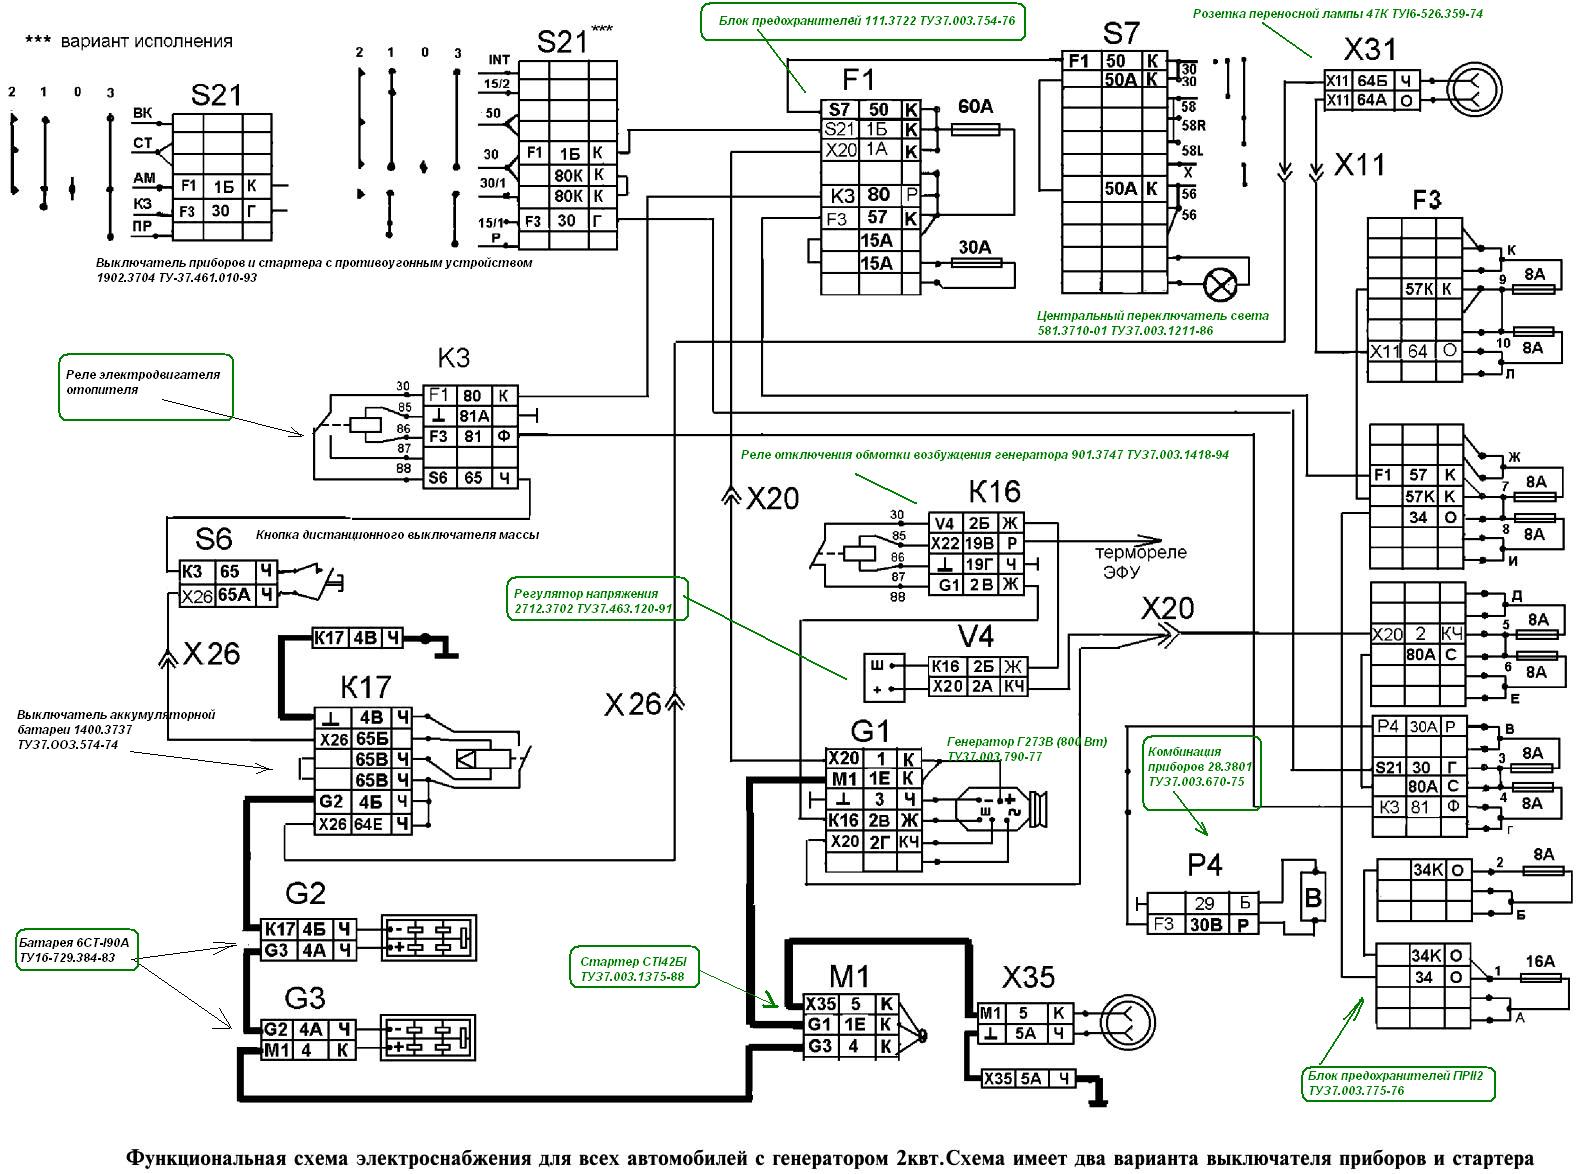 diagrama de alimentación para vehículos Kamaz con generador de 2 kW